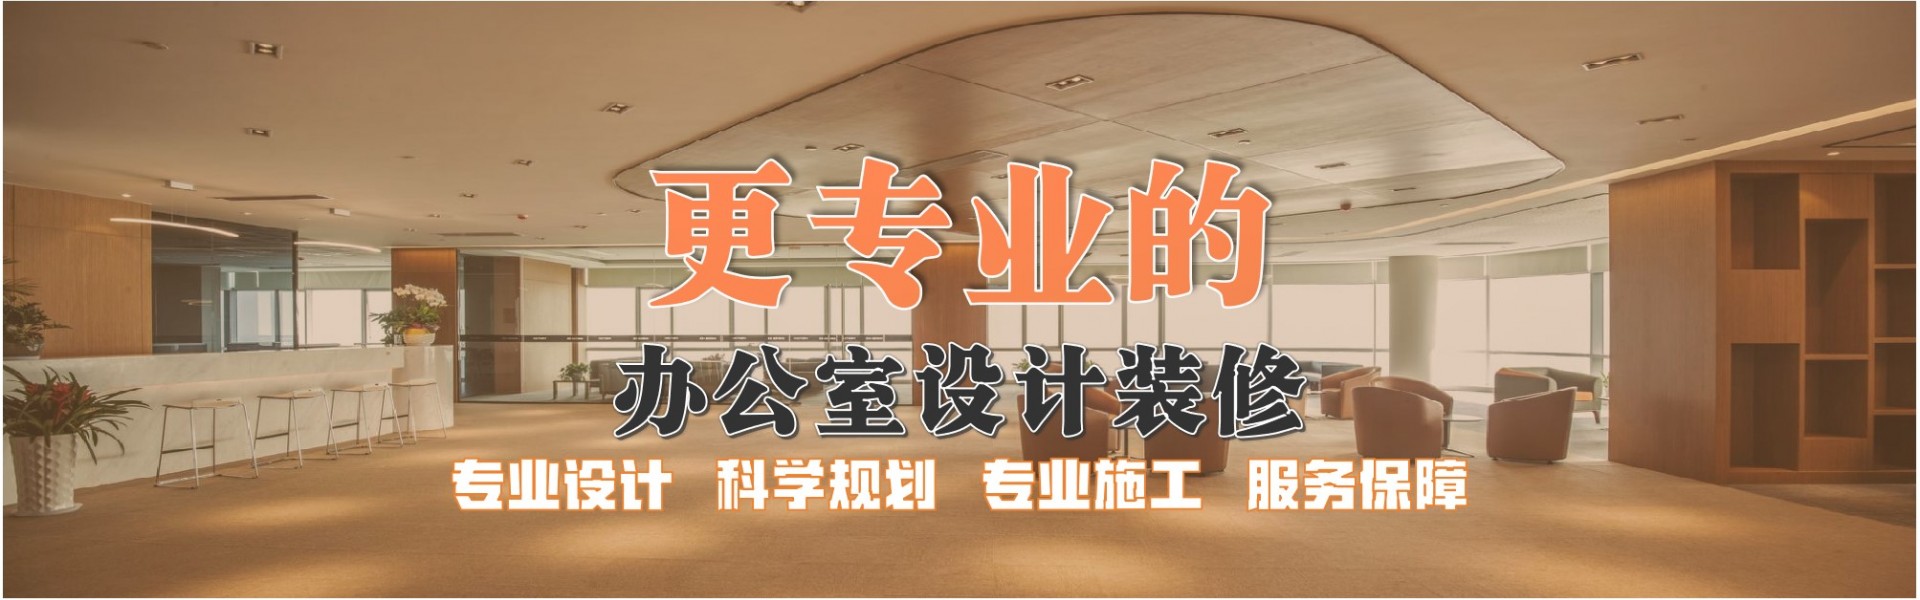 上海苏易建筑装饰工程有限公司 